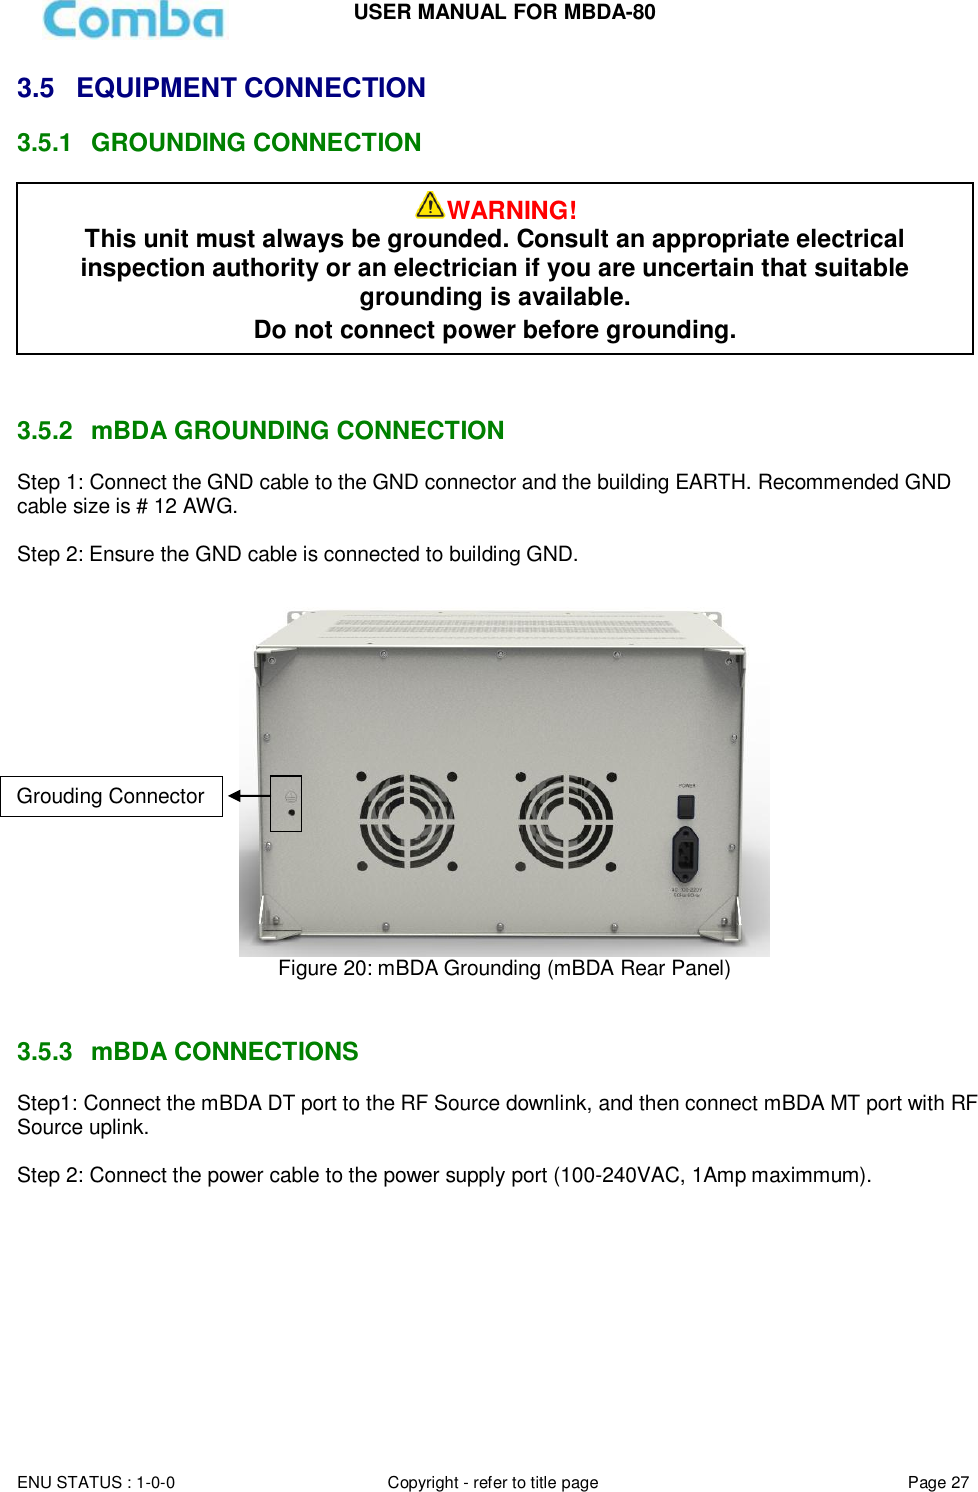 Page 27 of Comba Telecom MBDA-80 mBDA Band Seletive Repeater User Manual 